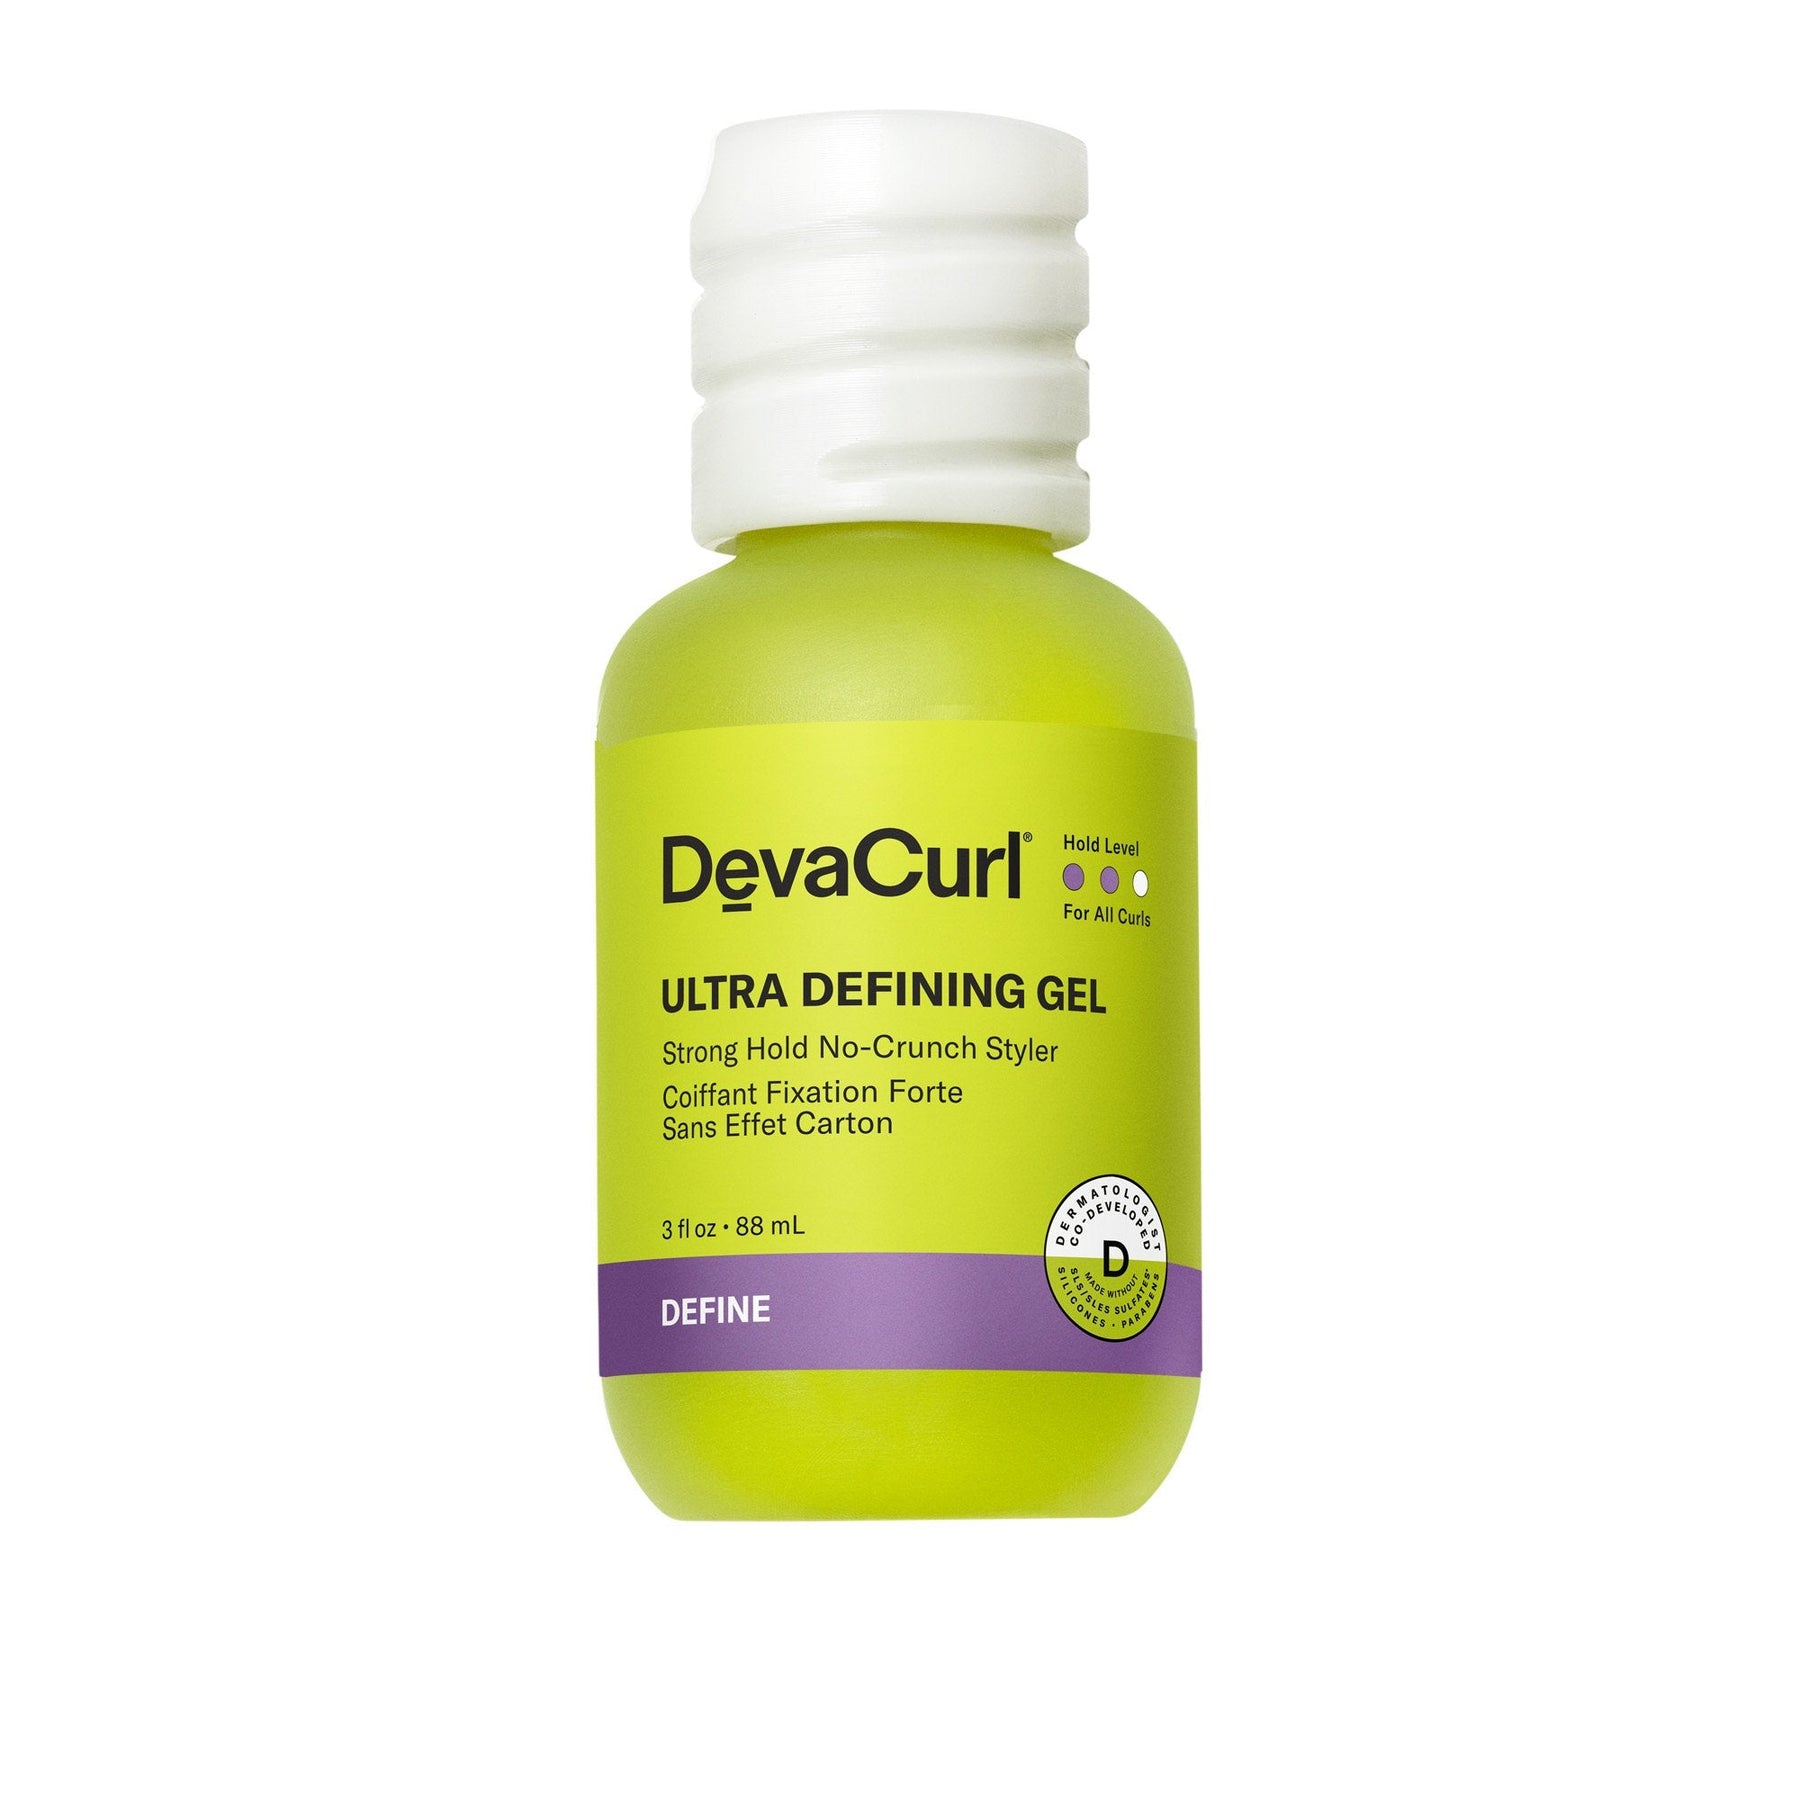 DevaCurl Ultra Defining Gel - ProCare Outlet by Deva Curl